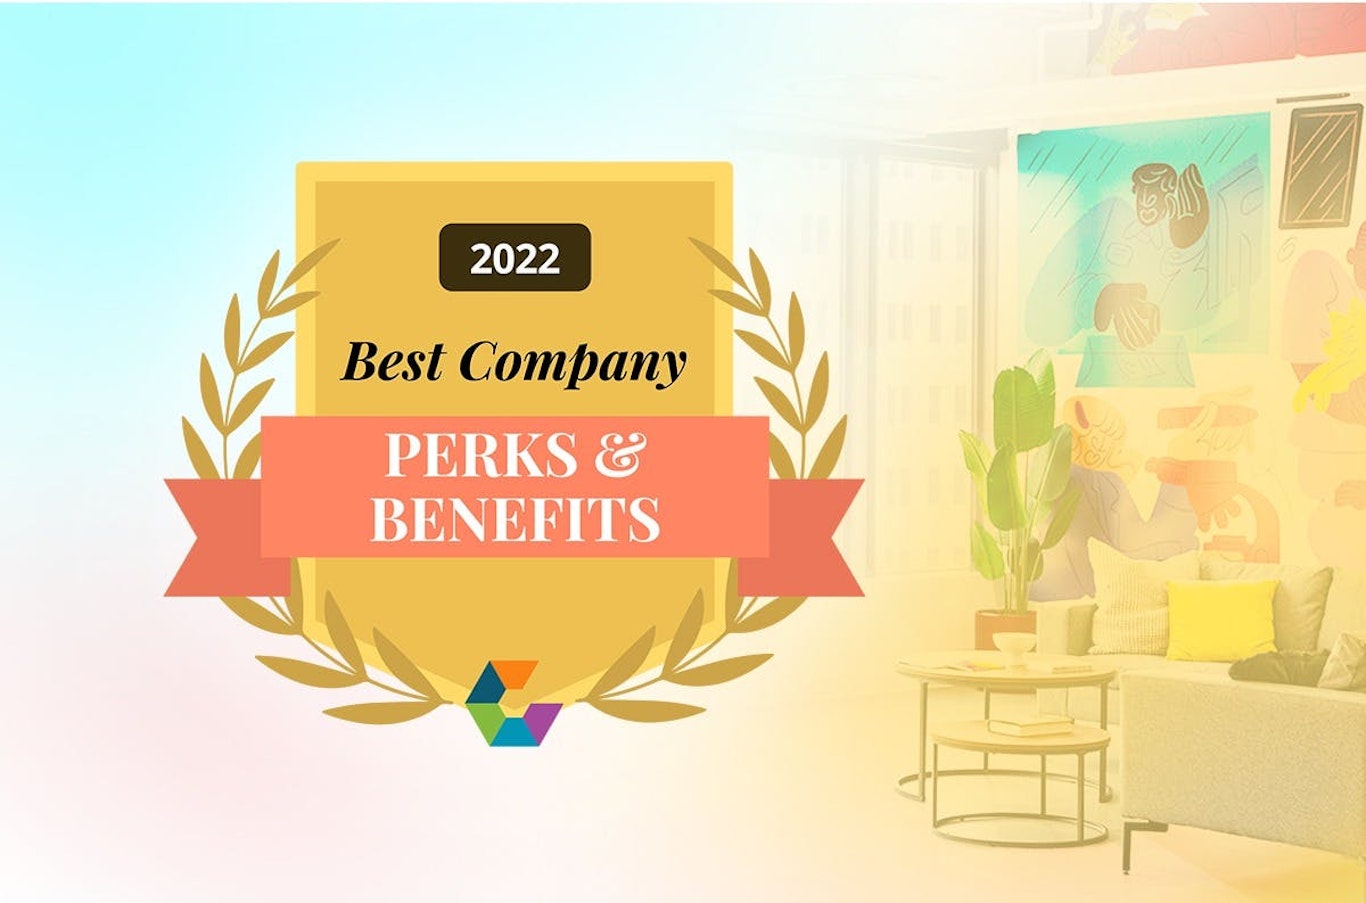 Comparably "Best Company Perks & Benefits" Award